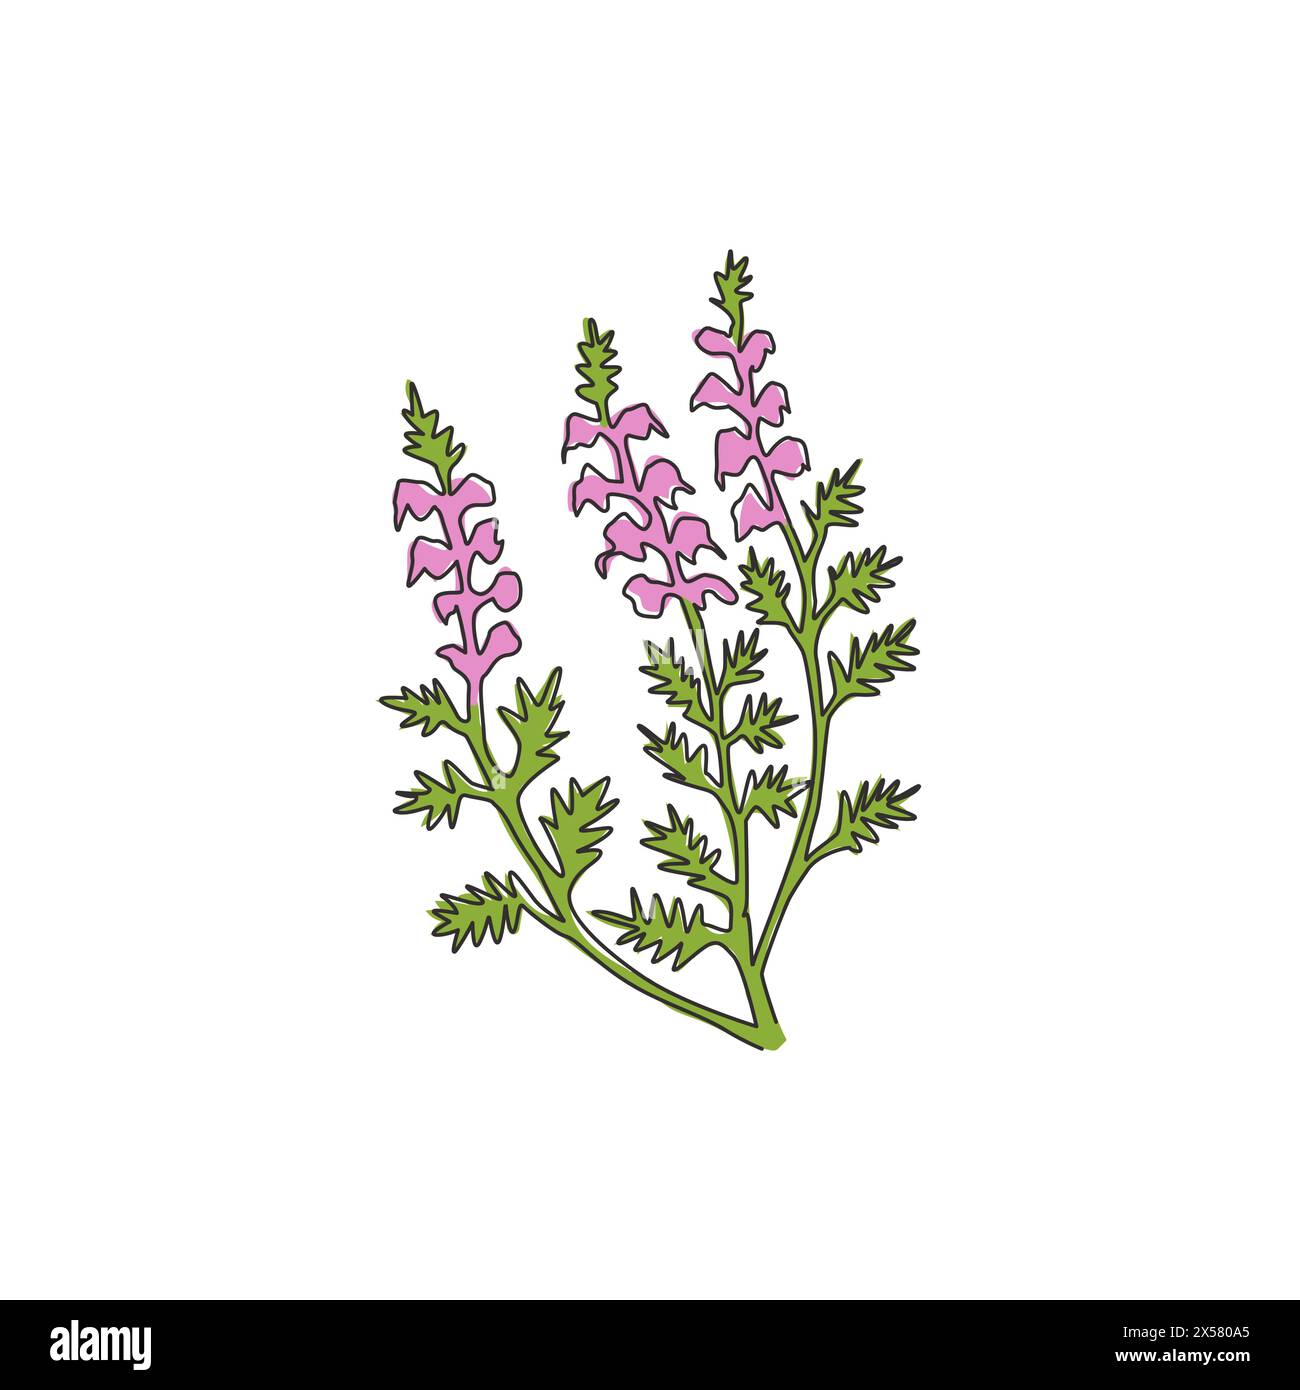 Eine durchgehende Linienzeichnung von Beauty Fresh Common Heather für Wohnkultur Wandbild Poster. Dekorative calluna vulgaris Blume für Einladungswagen Stock Vektor